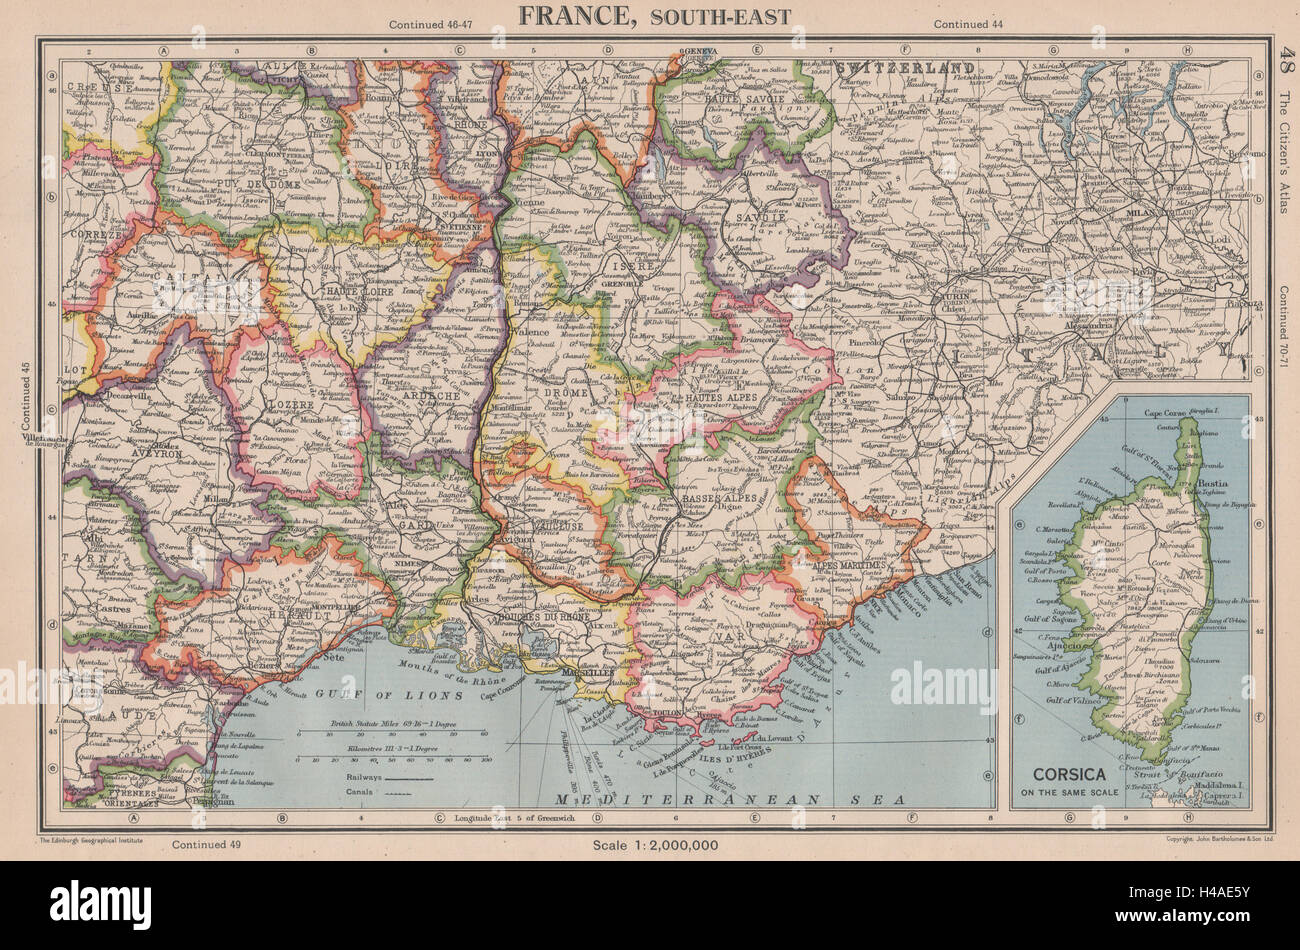 Francia sud-est pre 1947-modifica delle frontiere. w/o Tende & Mt Cenis 1944 mappa vecchia Foto Stock